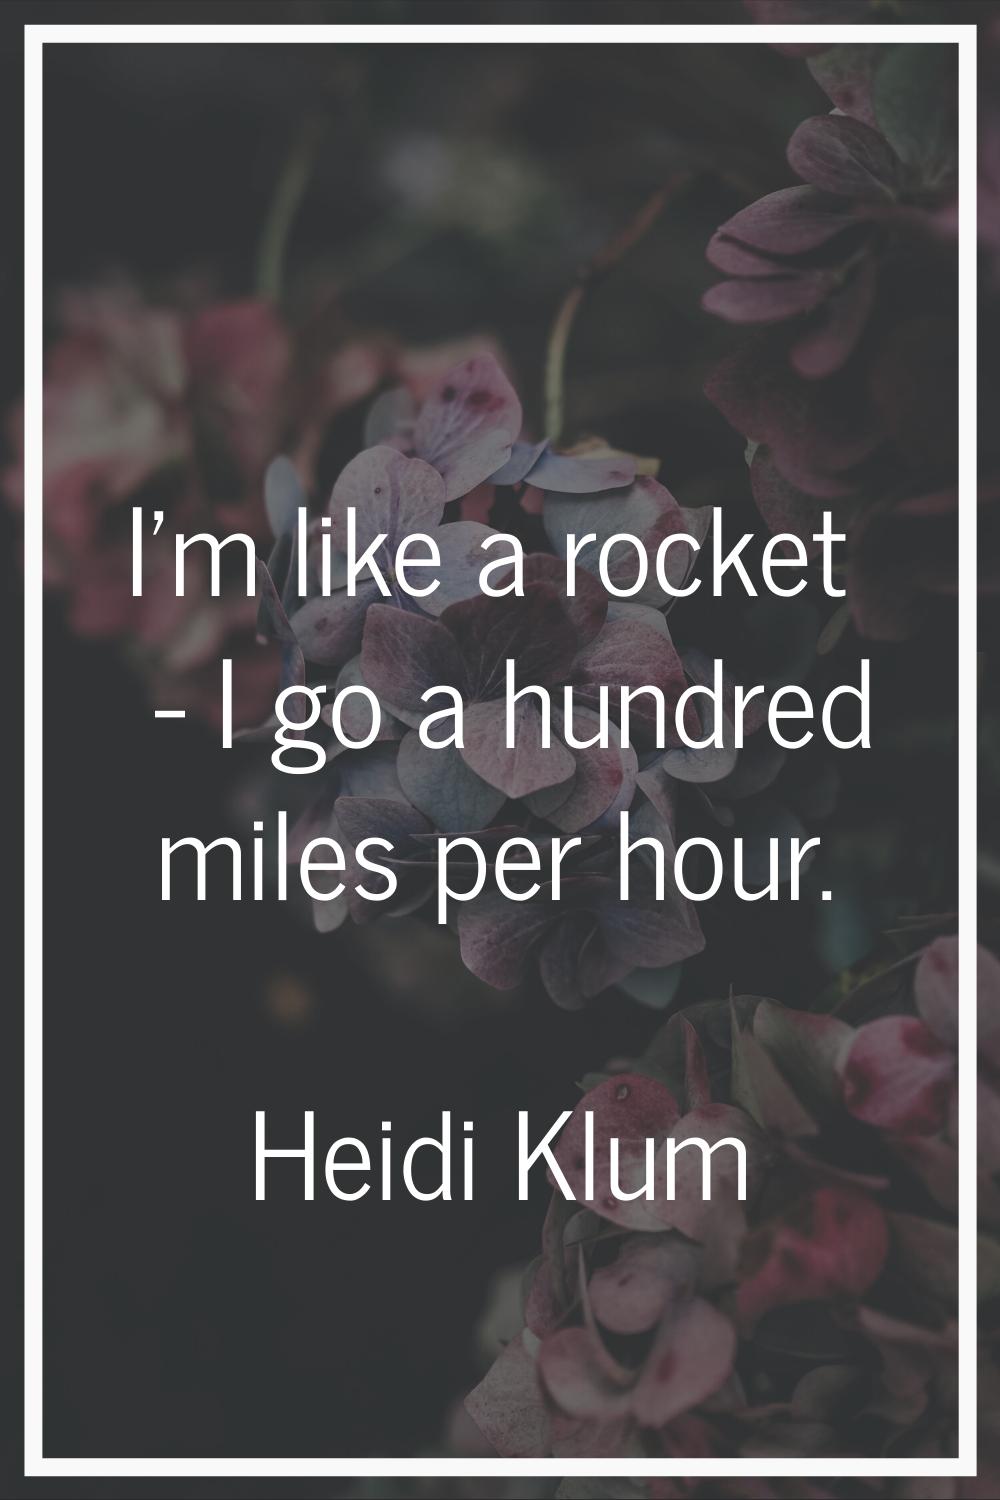 I'm like a rocket - I go a hundred miles per hour.